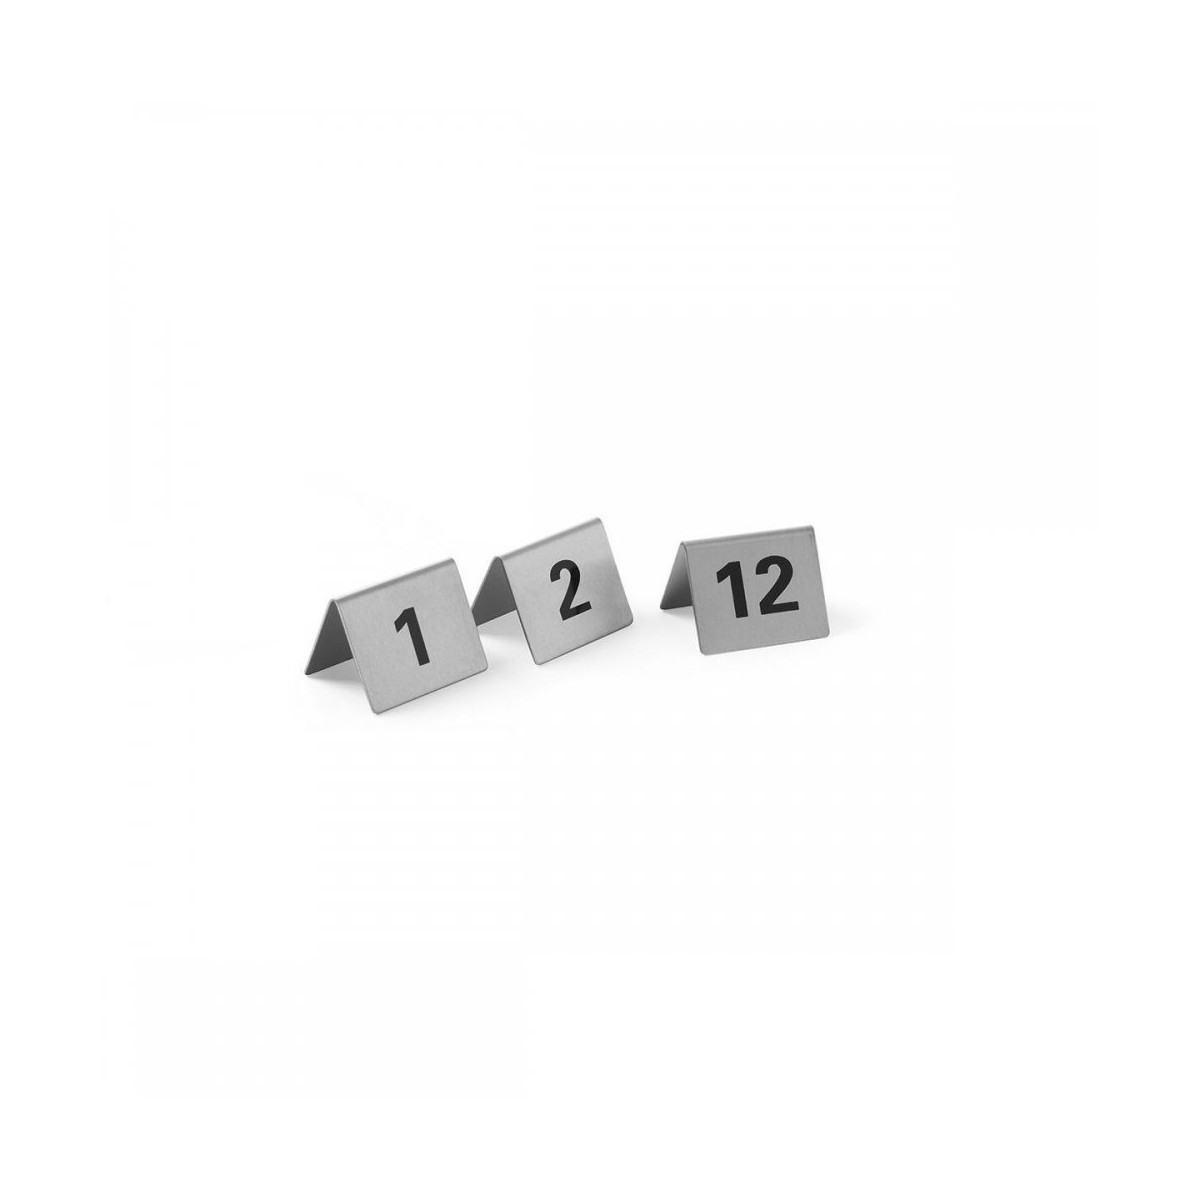 Set Targhette Numeri Tavoli1-12 Inox